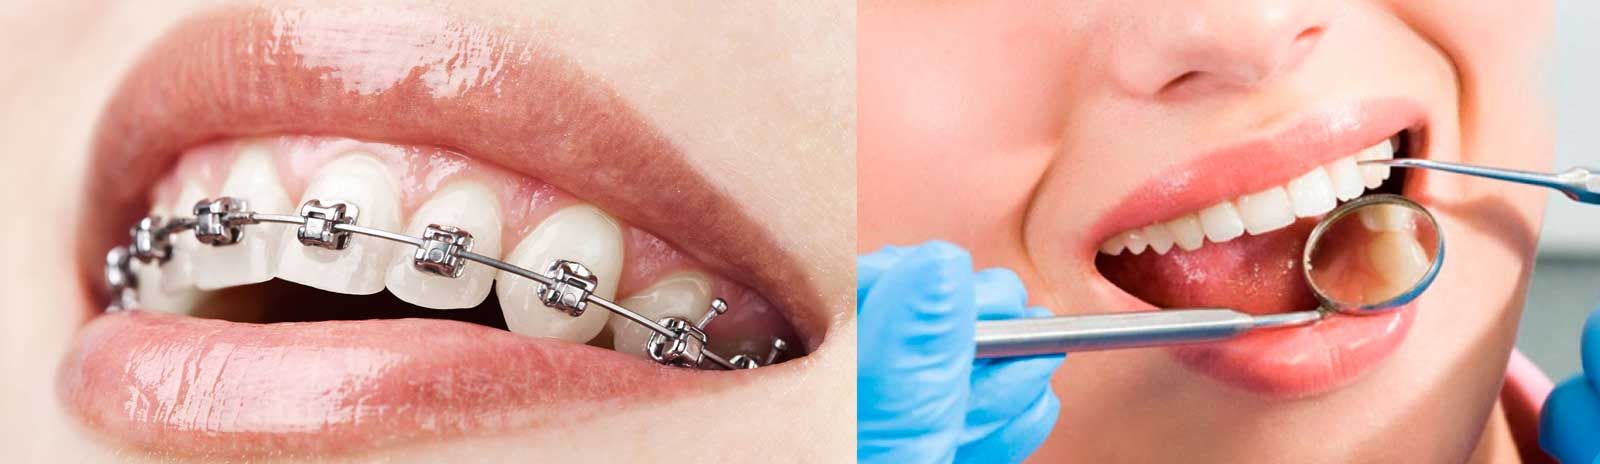 Clínica Dental de Especialidades Doctora Amparo Sierra Alonso procedimientos odontológicos